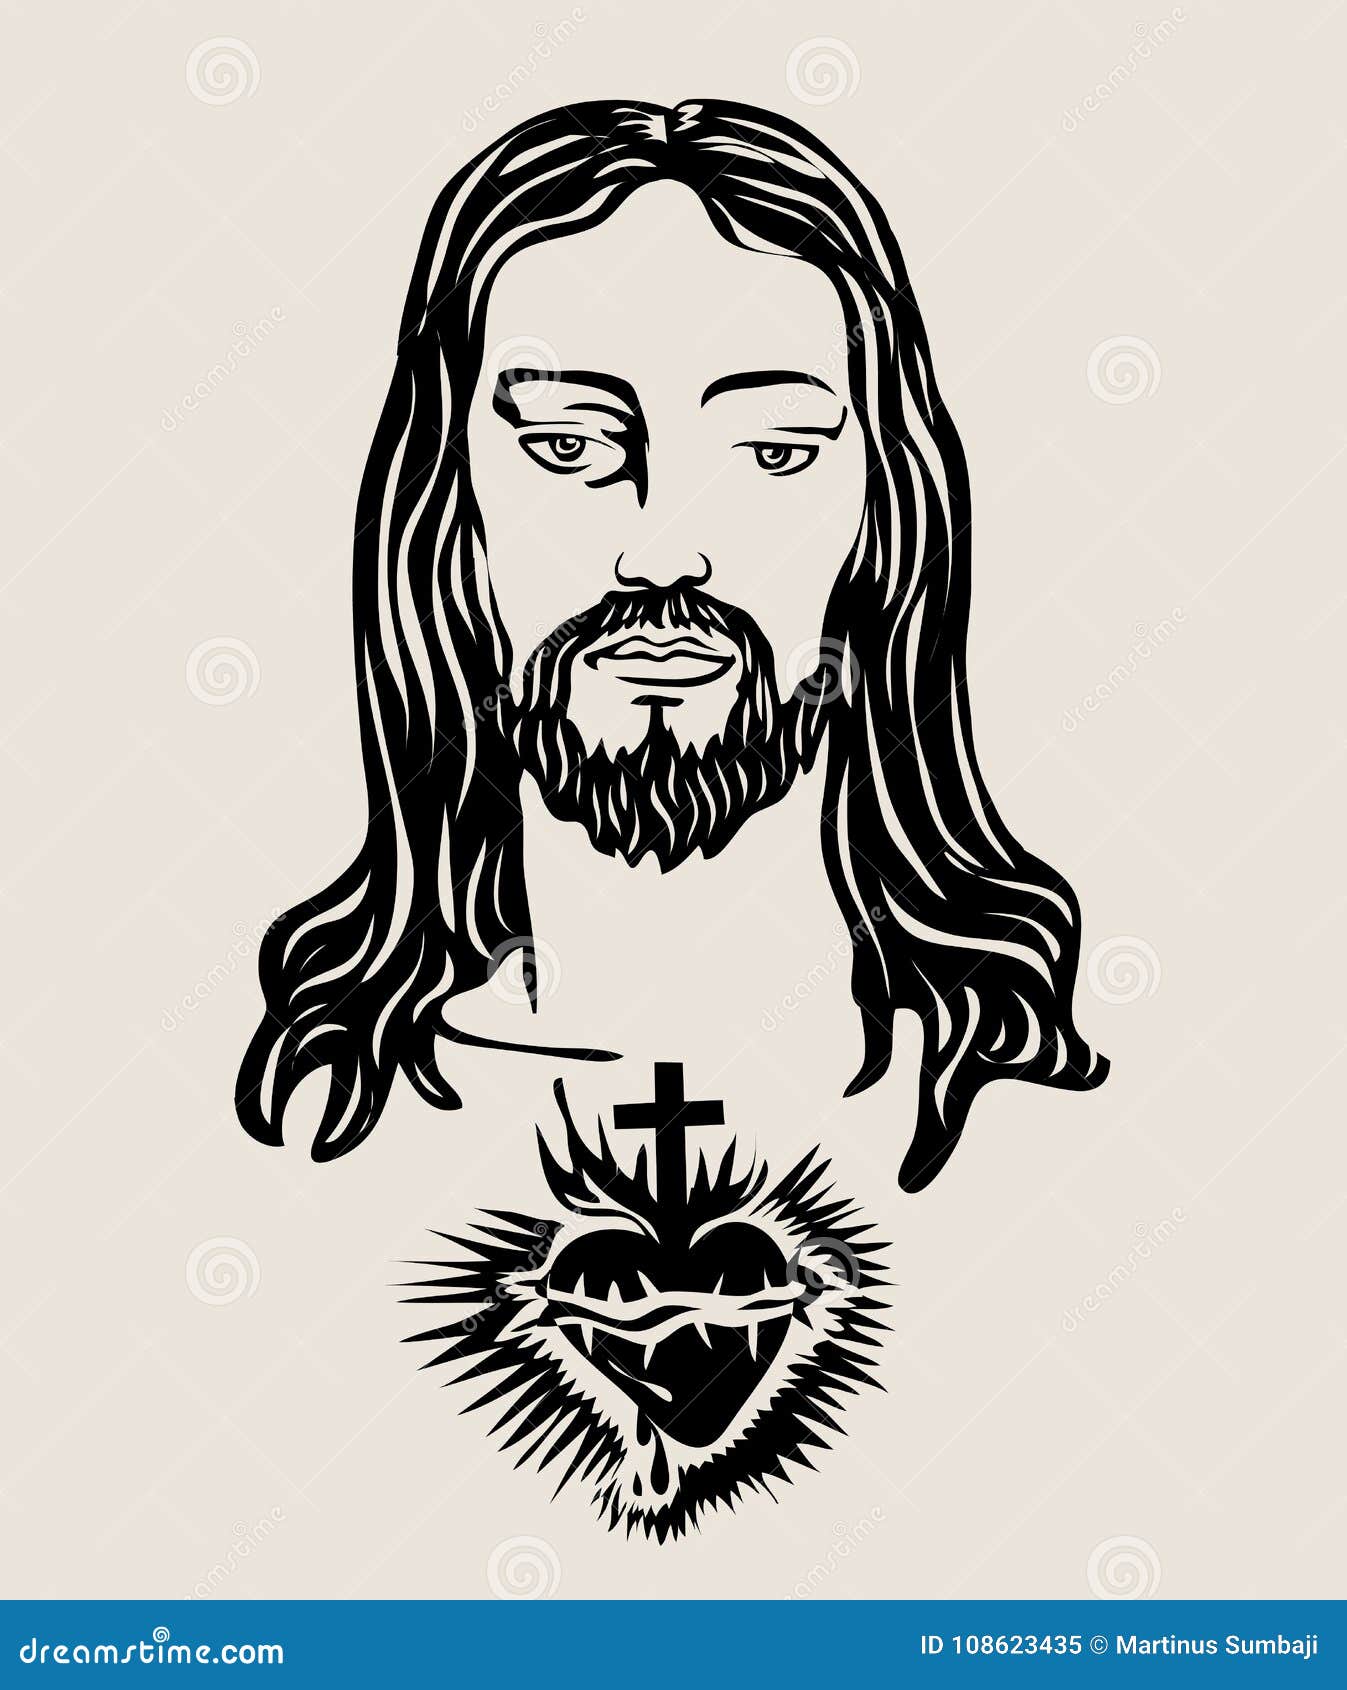 Jesus drawings